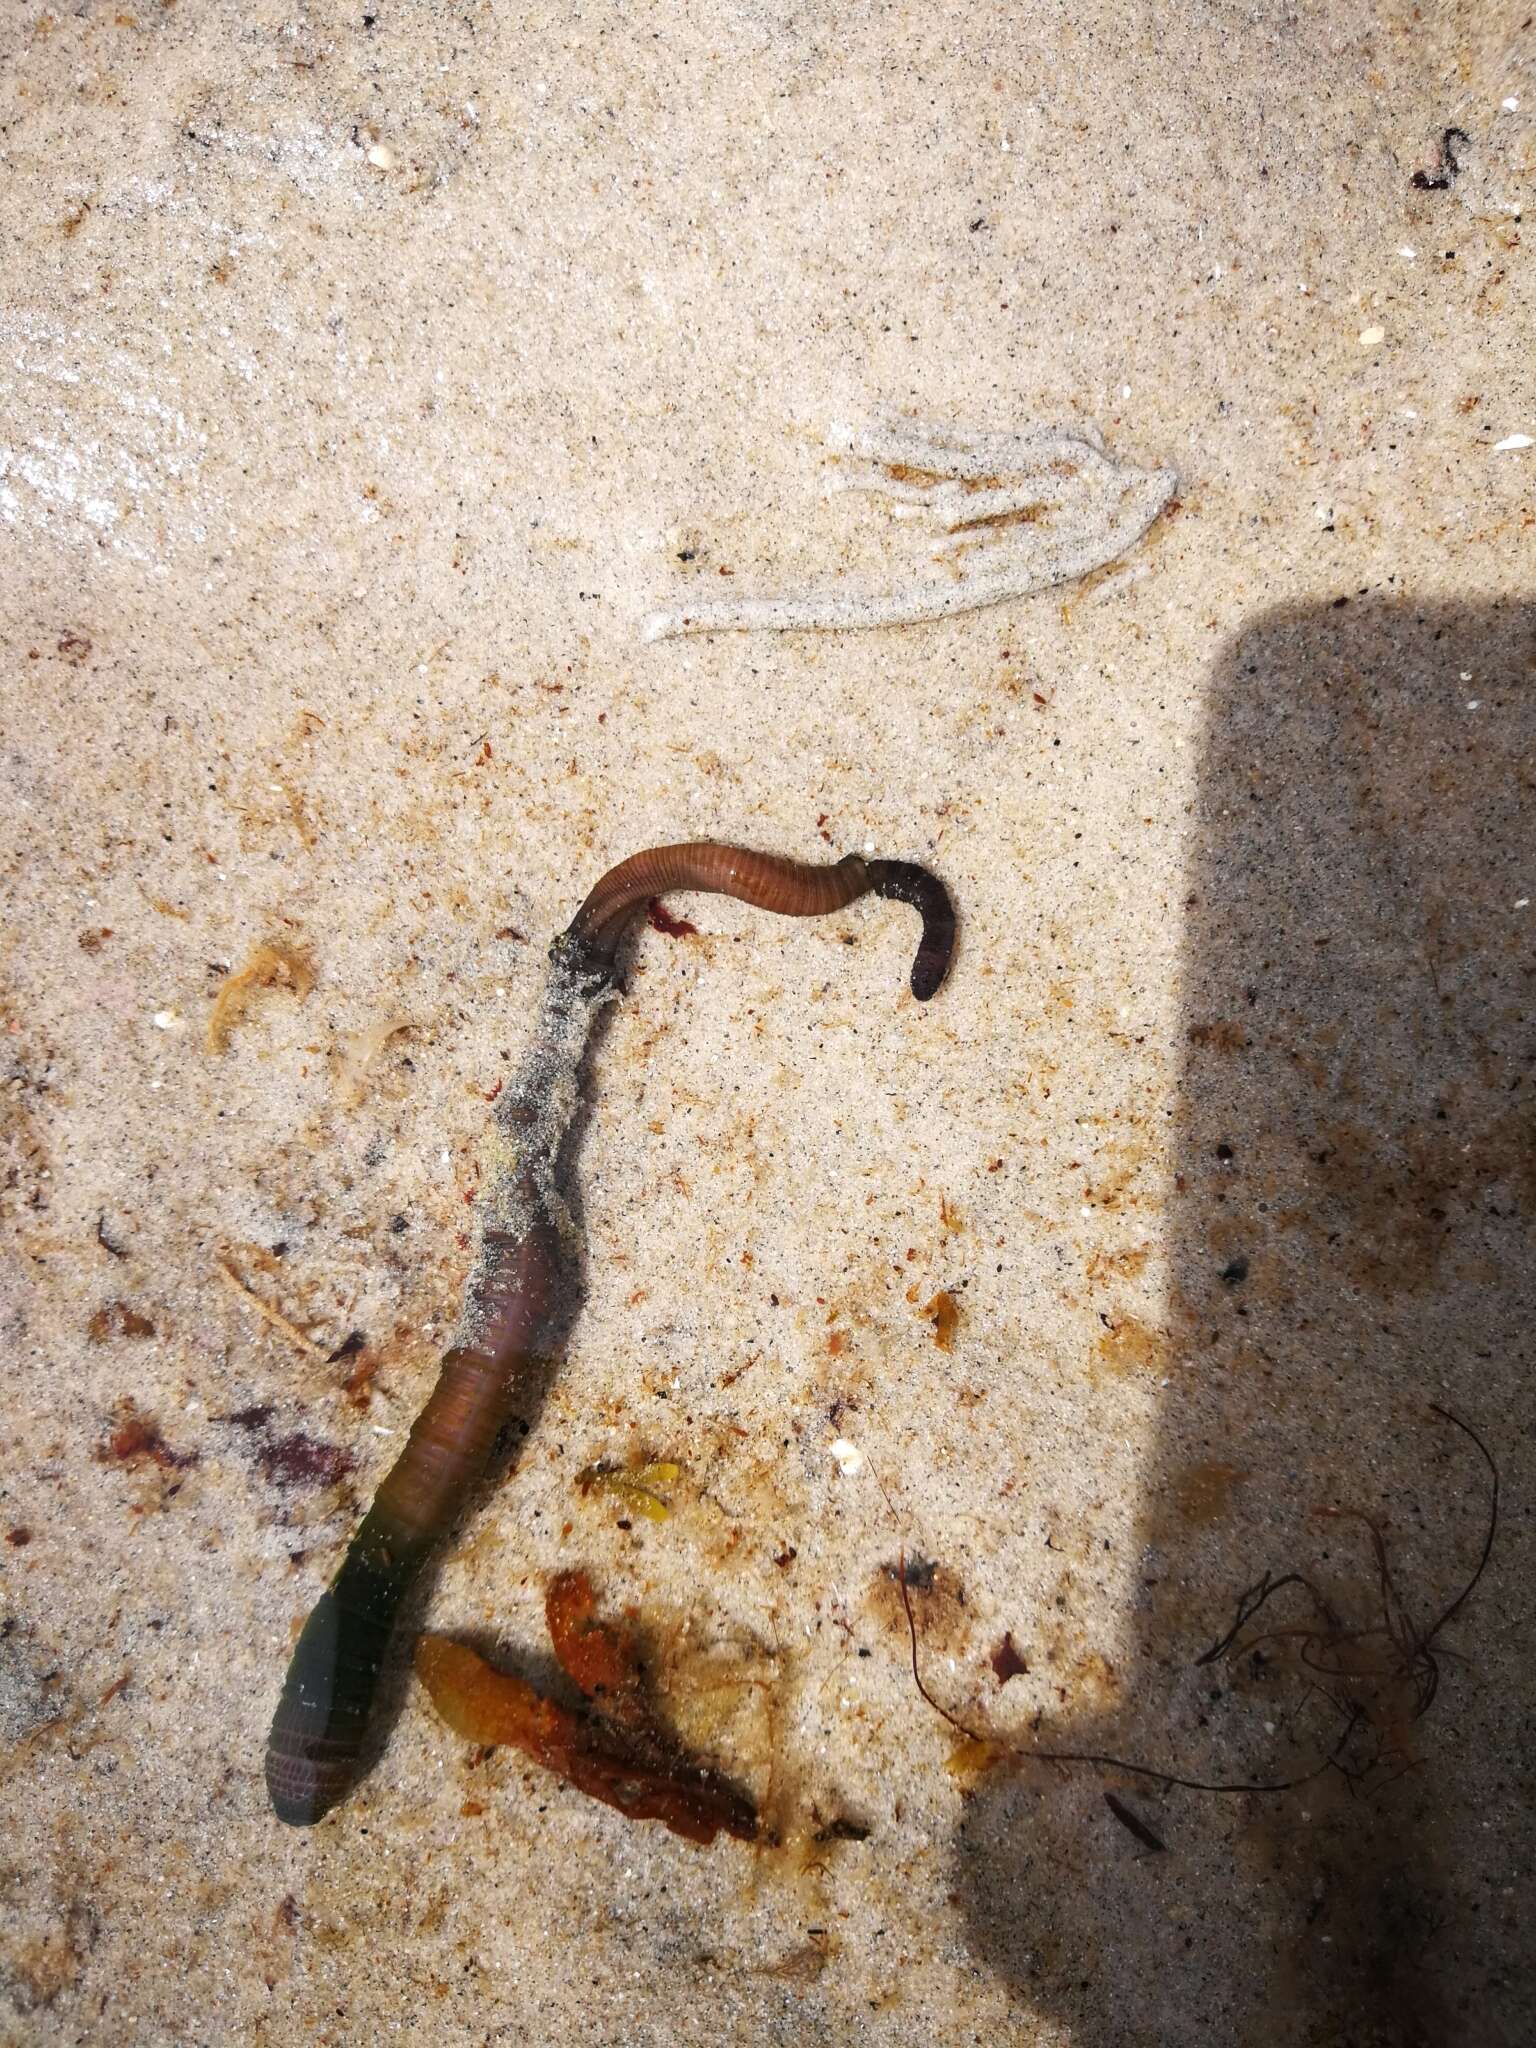 Image of black lug worm